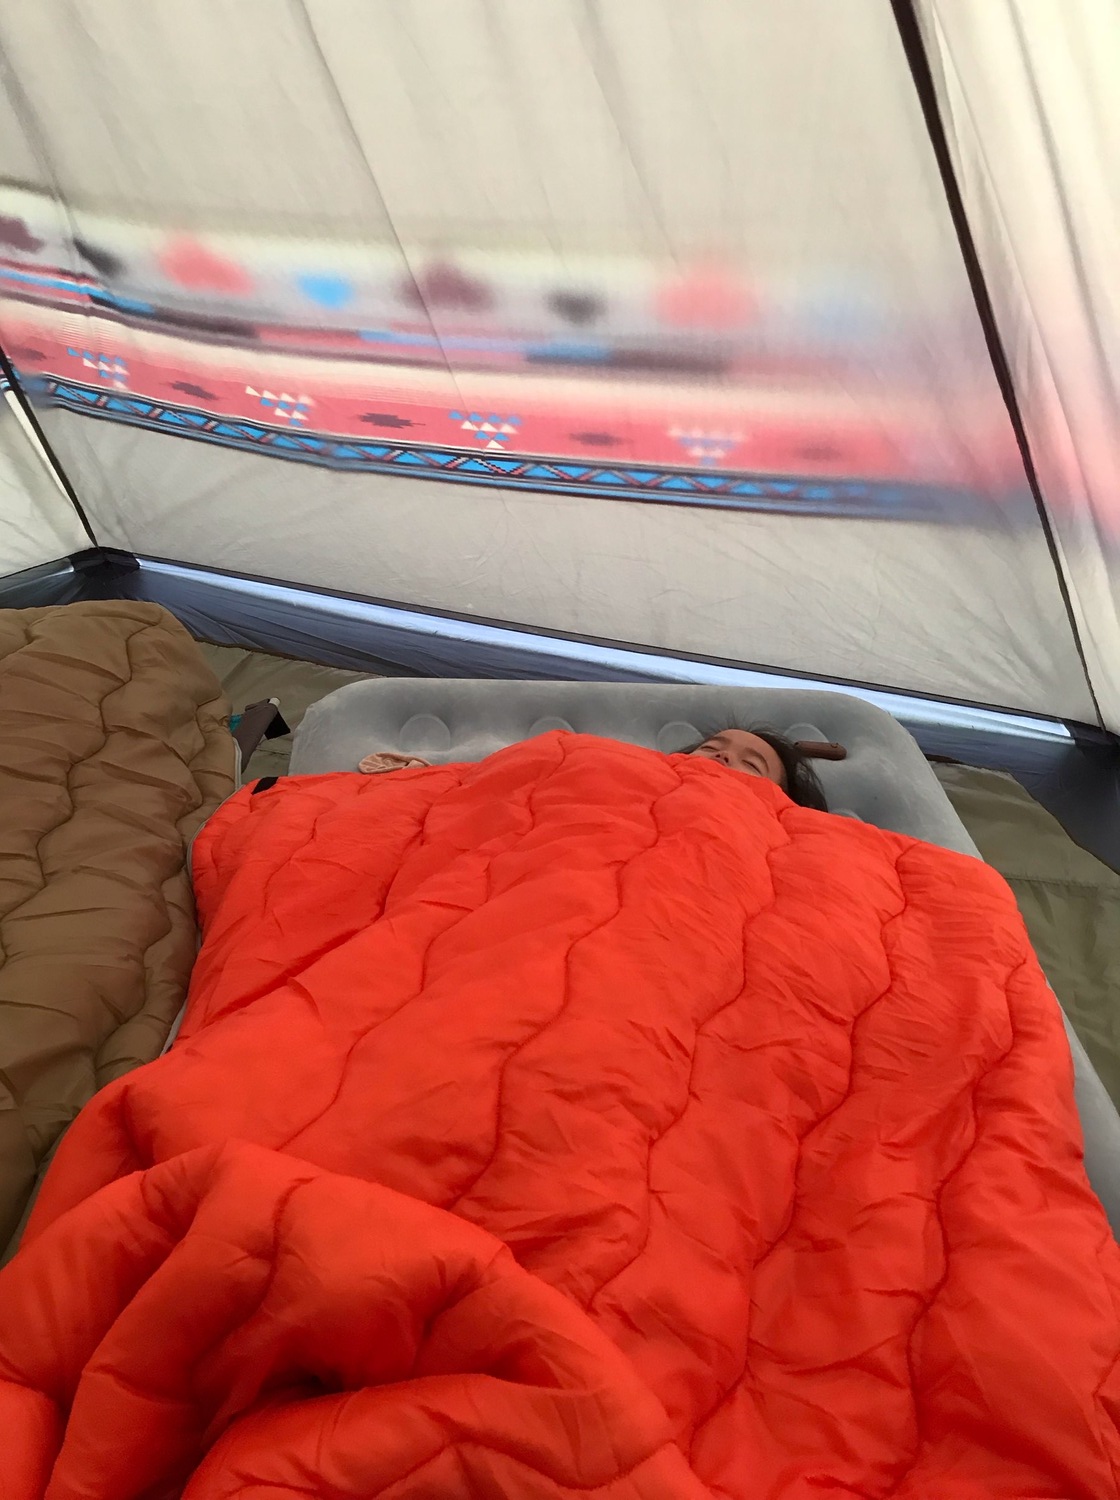 テントの中で眠る3歳の娘。エアベットの上でオレンジ色の寝袋にくるまっている。